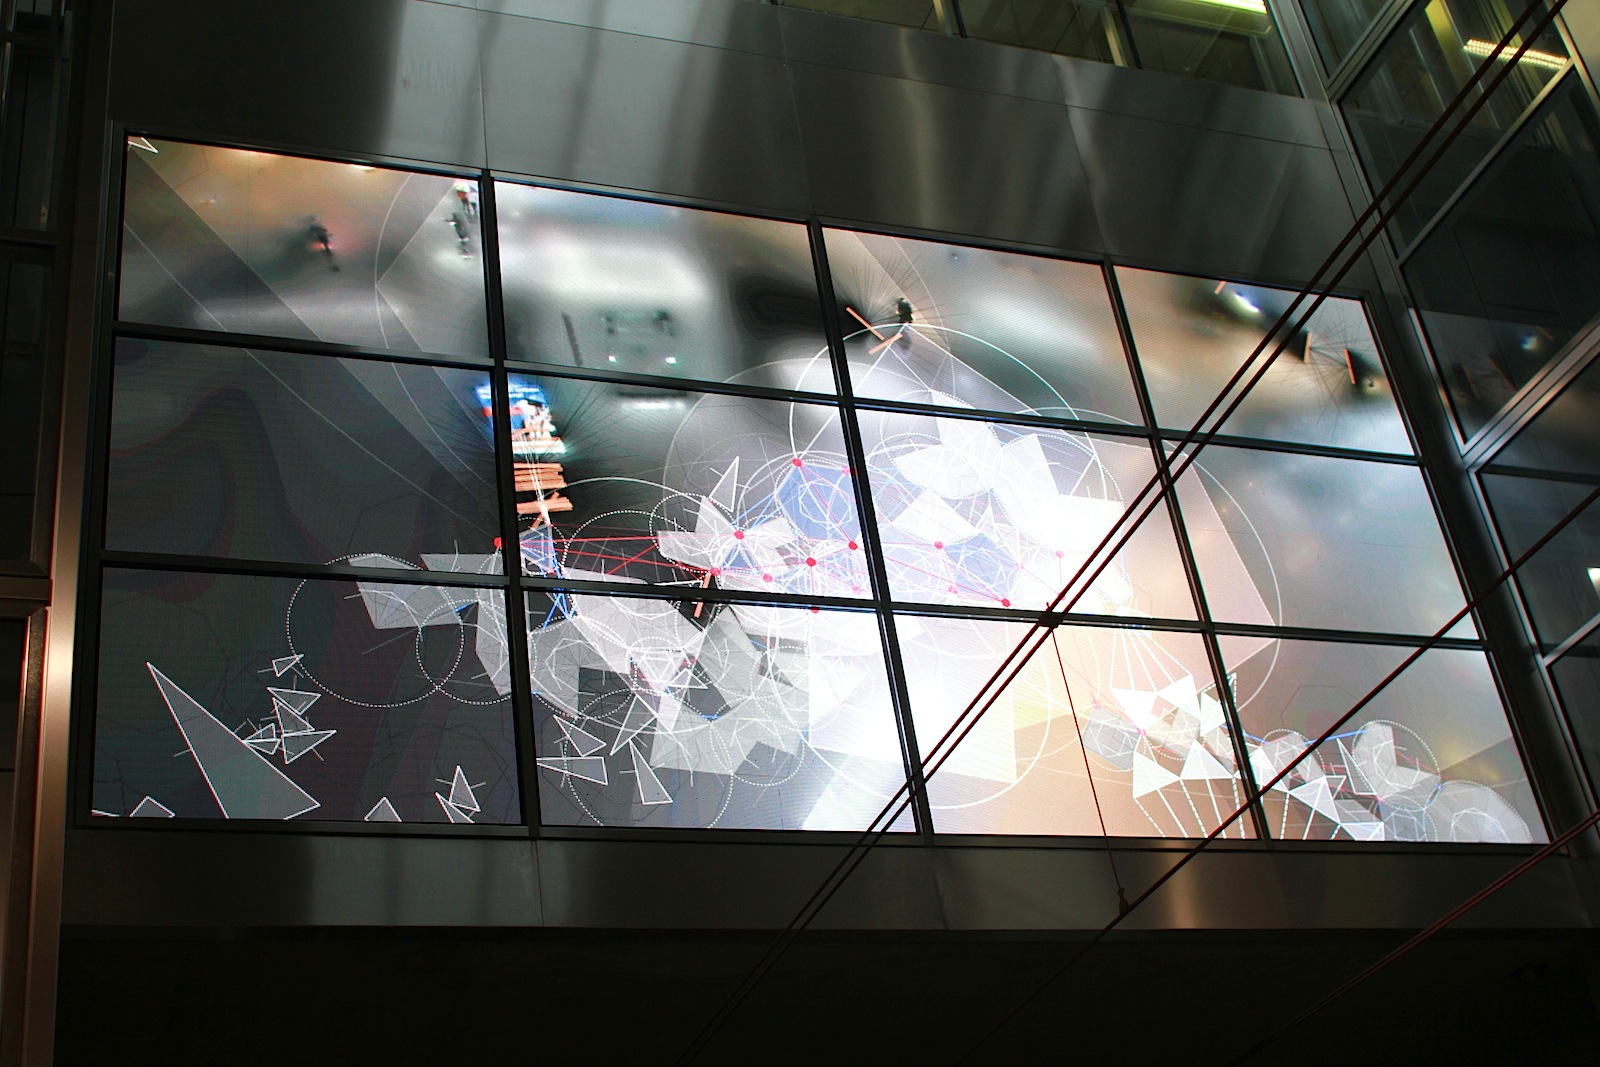 Station Schadowstraße. Die zentrale Projektionsfläche ist in die große Stirnwand des Bahnhofs integriert, wo ein reaktives, digitale Video in Echtzeit generiert wird. 